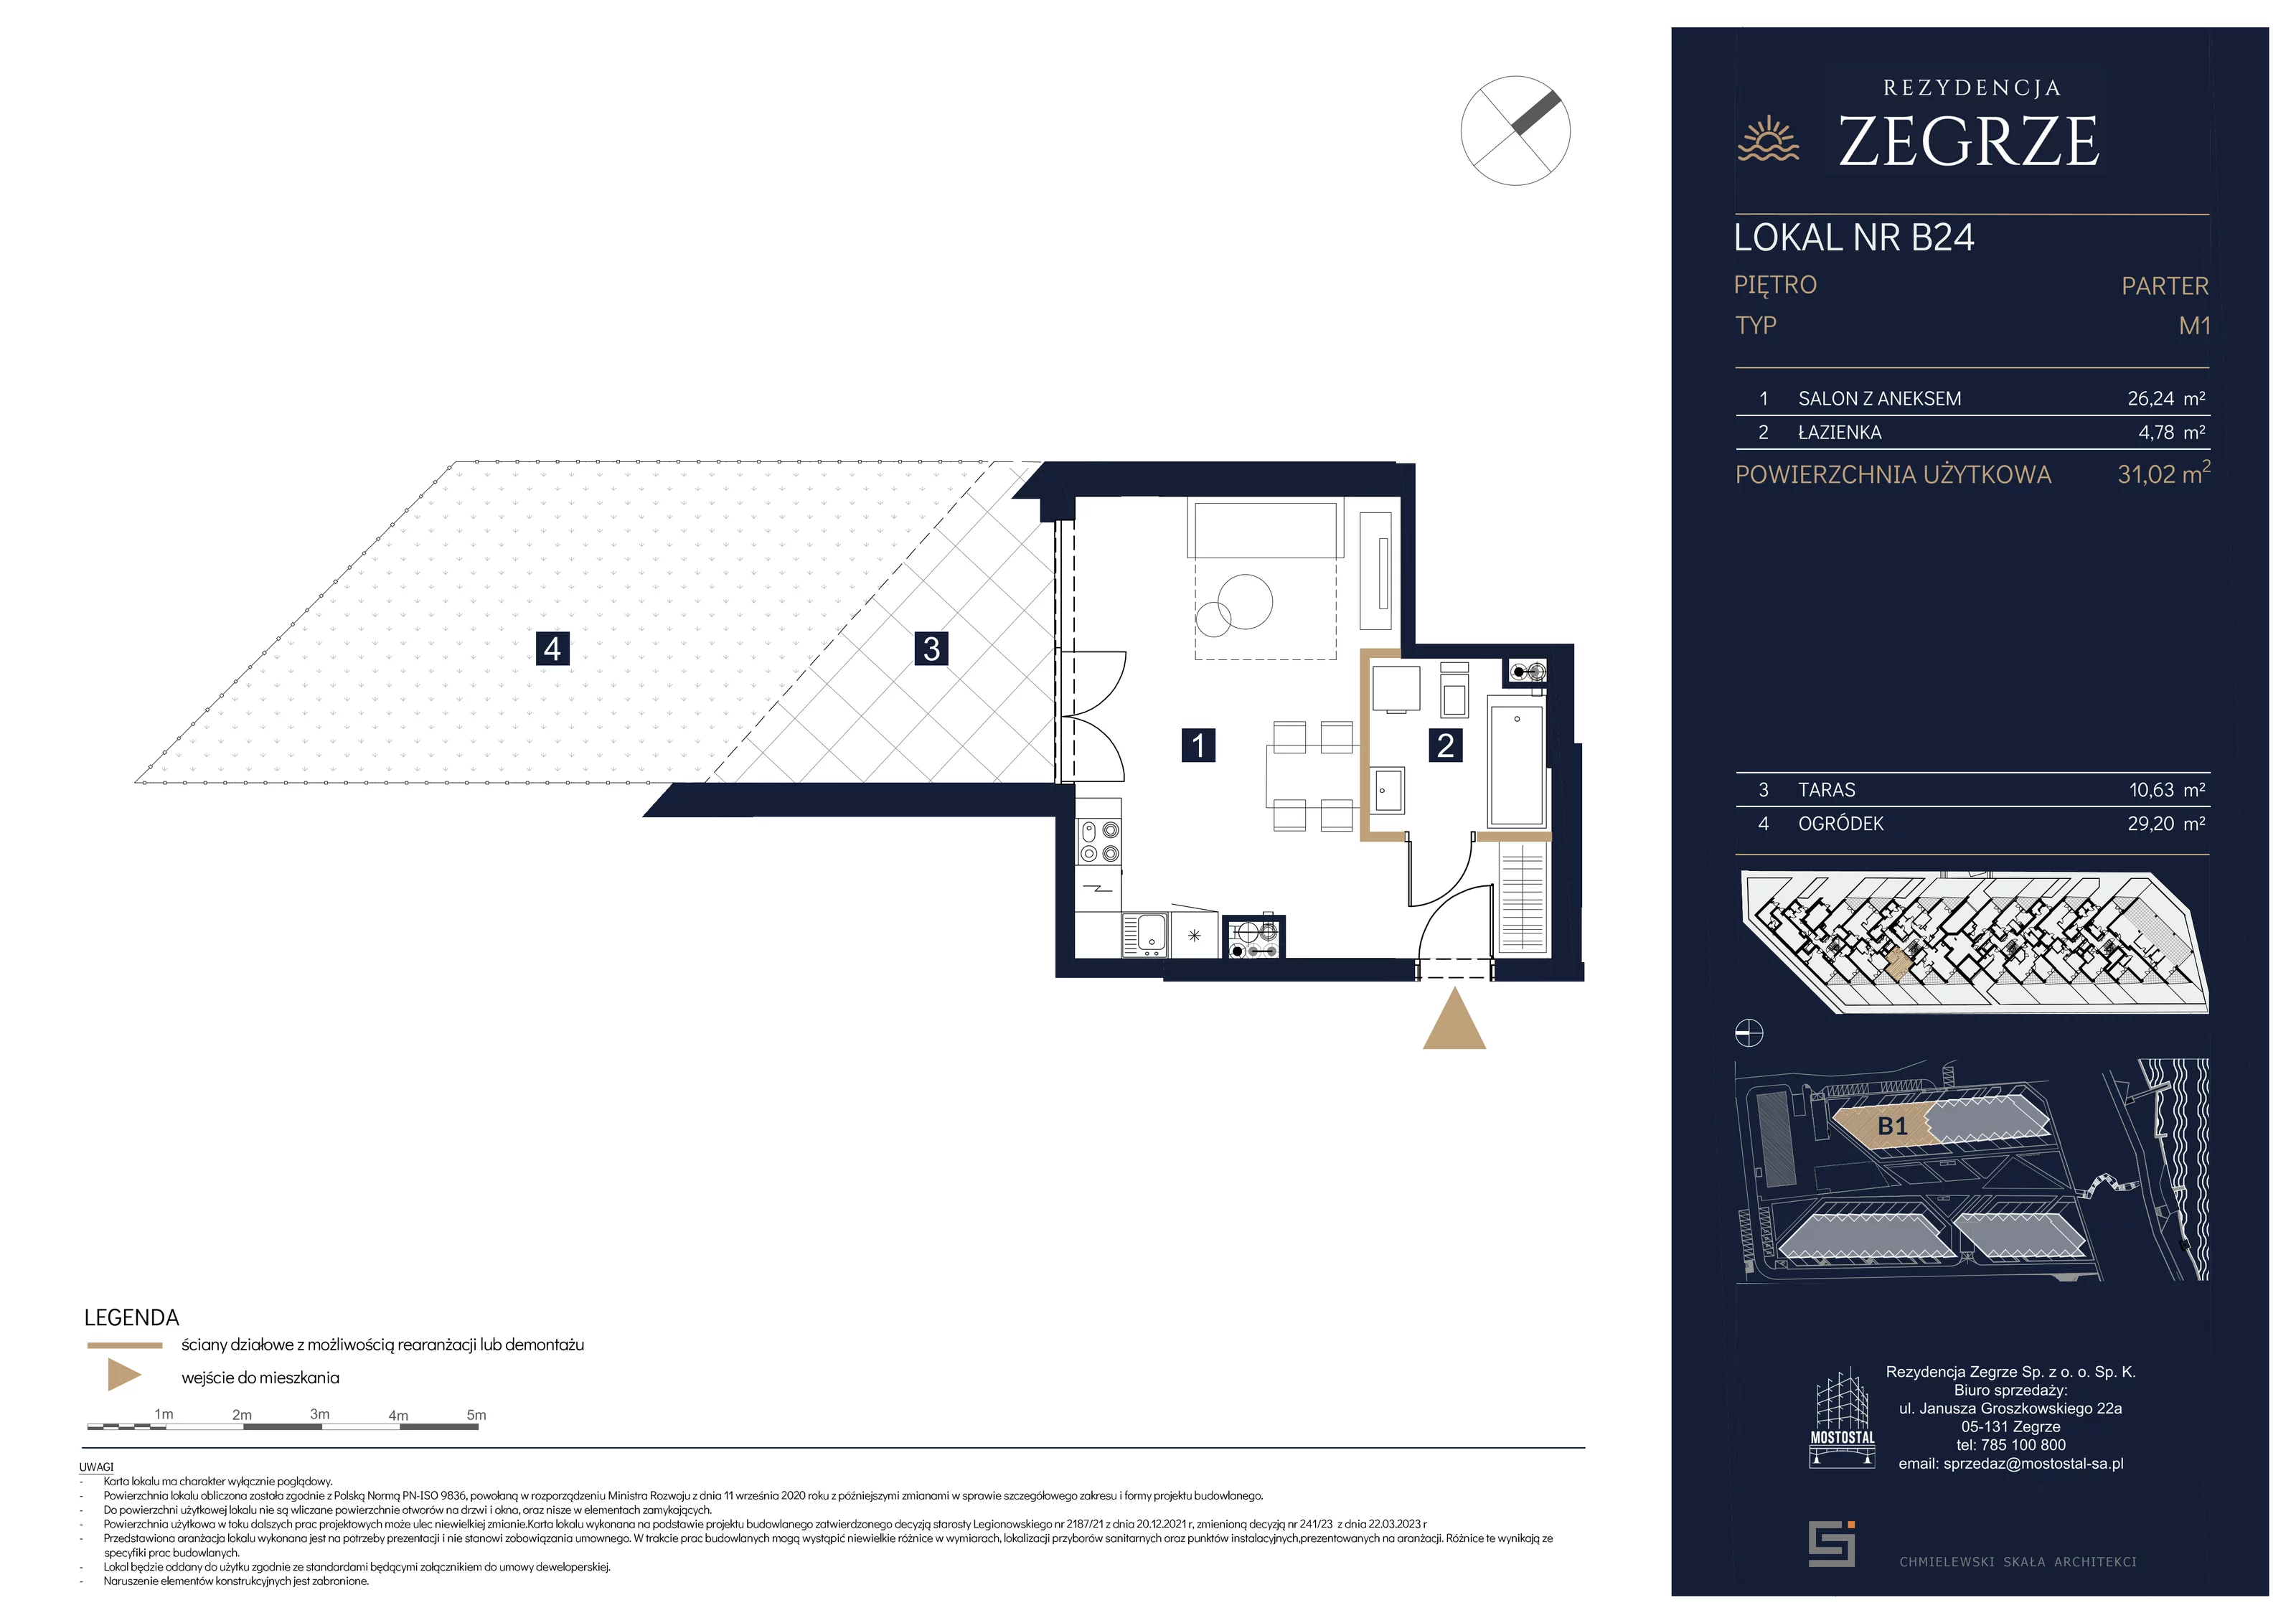 Mieszkanie 31,02 m², parter, oferta nr B1.1.B.24, Rezydencja Zegrze II, Zegrze, ul. Groszkowskiego 22A